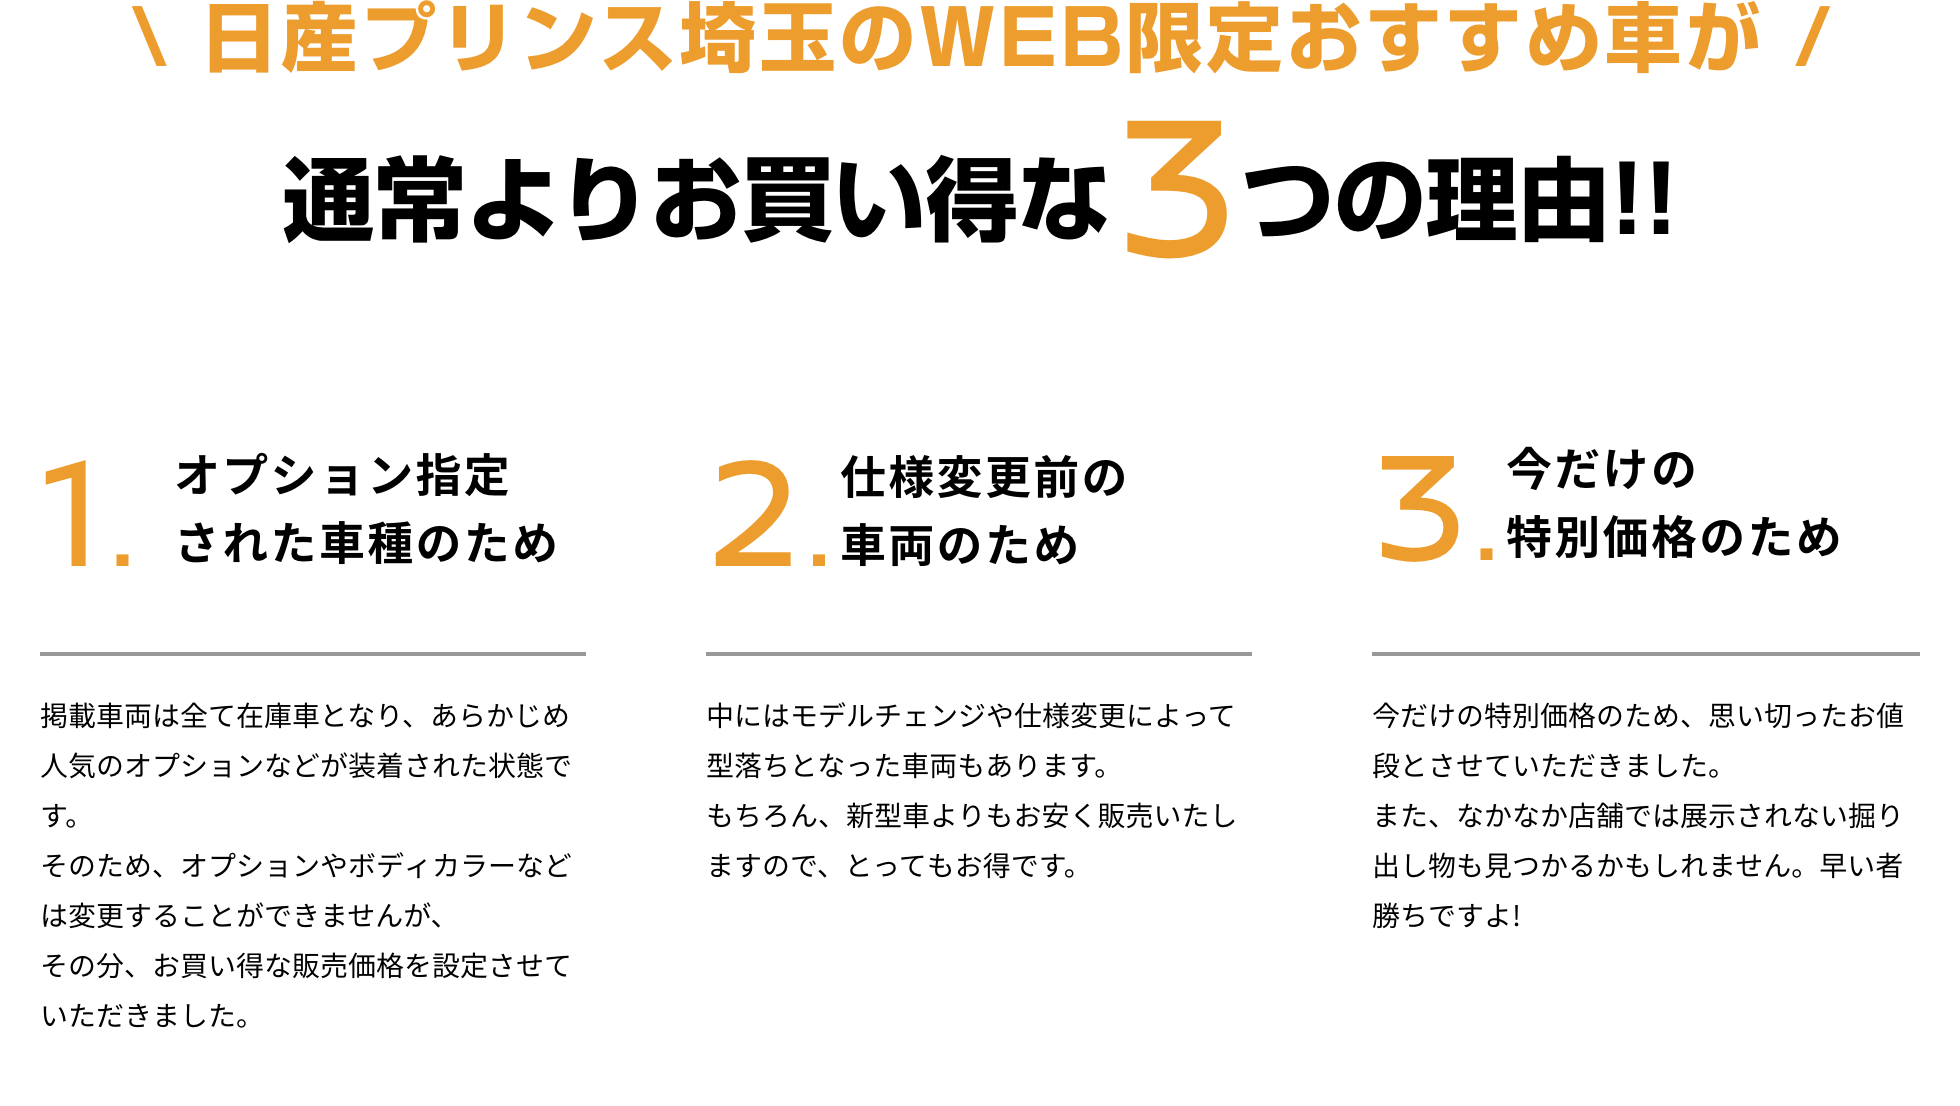 日産プリンス埼玉のWEB限定おすすめ車が 通常よりお買い得な3つの理由!!